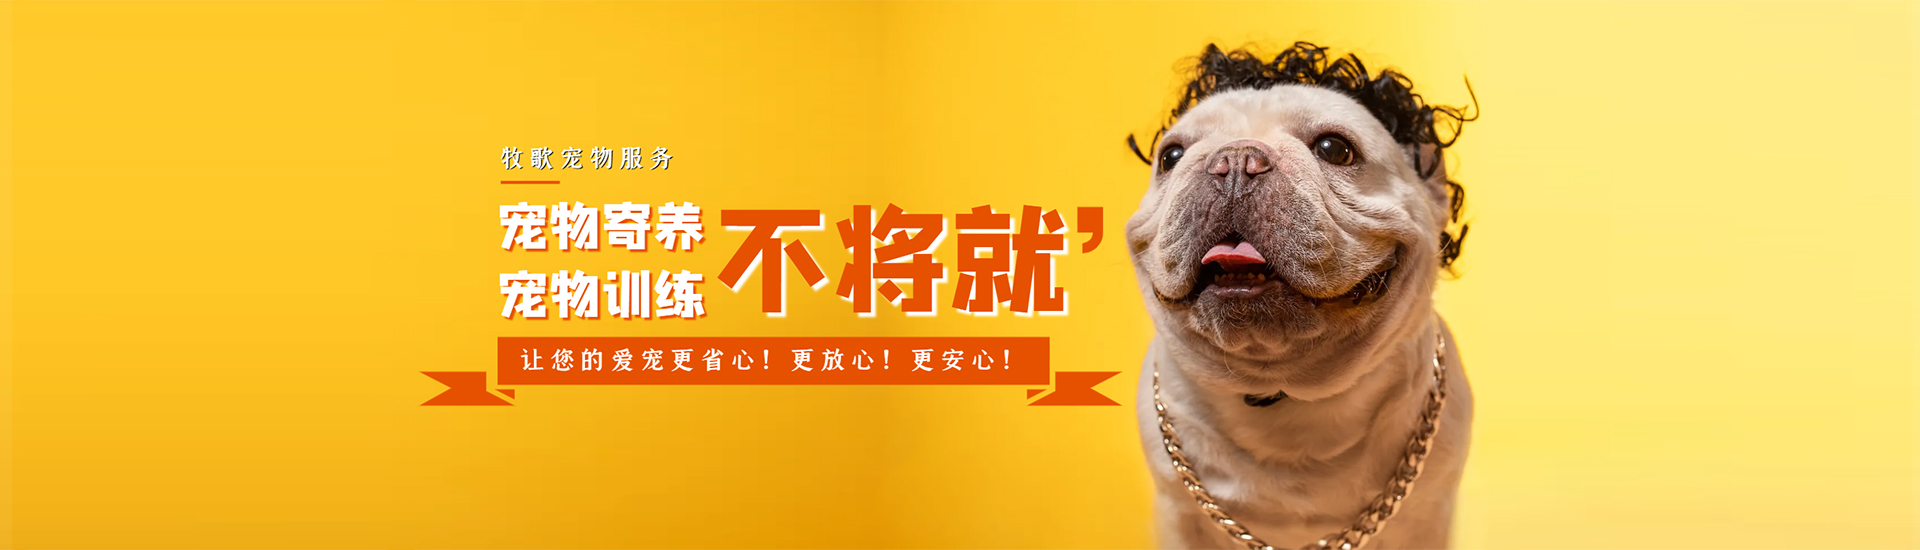 贵州牧歌宠物服务有限公司【官网】